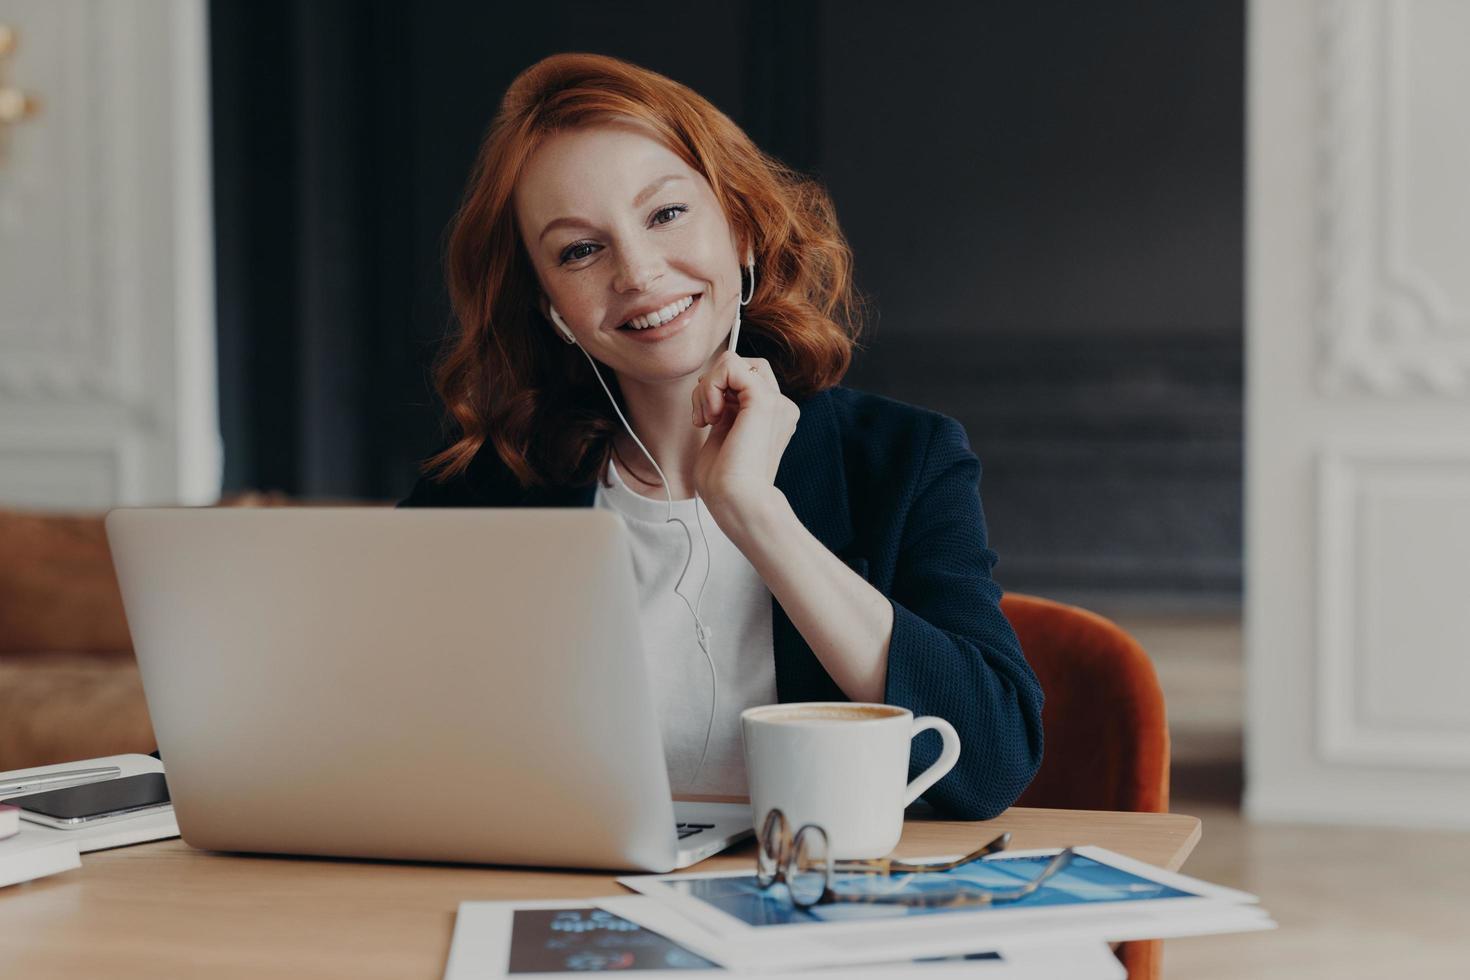 une femme d'affaires indépendante aux cheveux roux est assise devant un ordinateur portable, communique avec des collègues par vidéoconférence, est assise au bureau, boit du café, a une expression heureuse. travail à distance photo